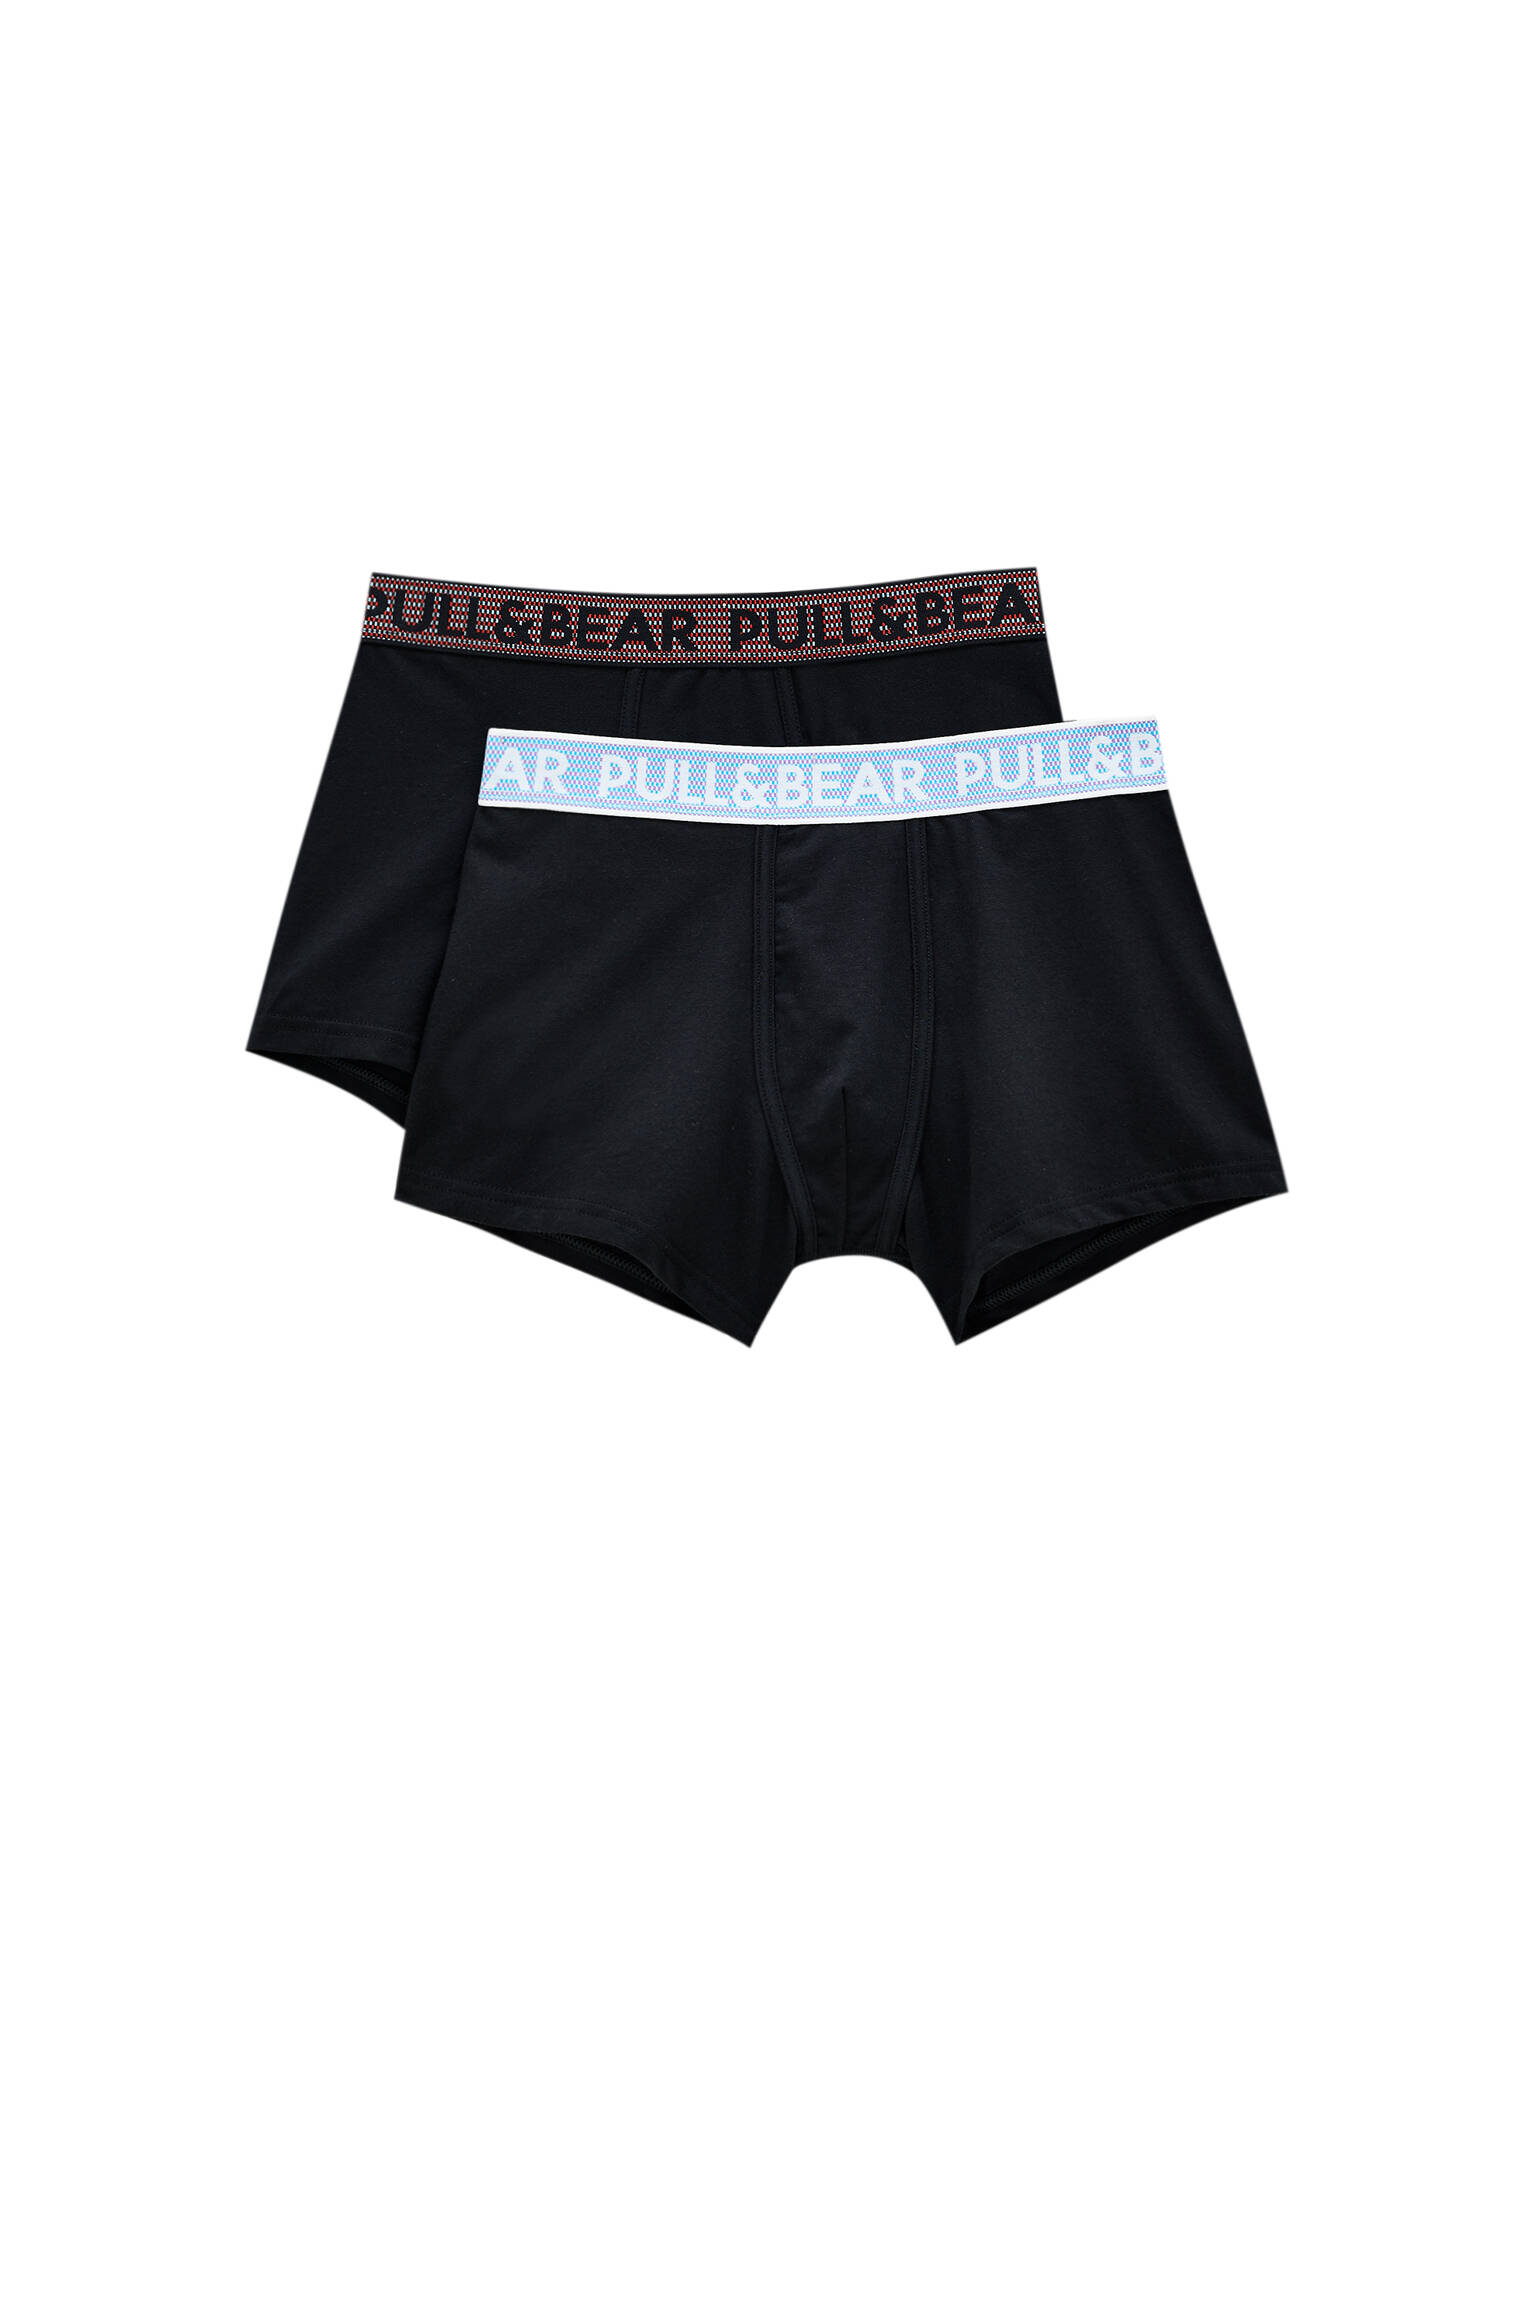 Pull&bear Homme Lot De Deux Boxers Noirs En Coton, Avec Logo Contrastant à La Taille. Divers M